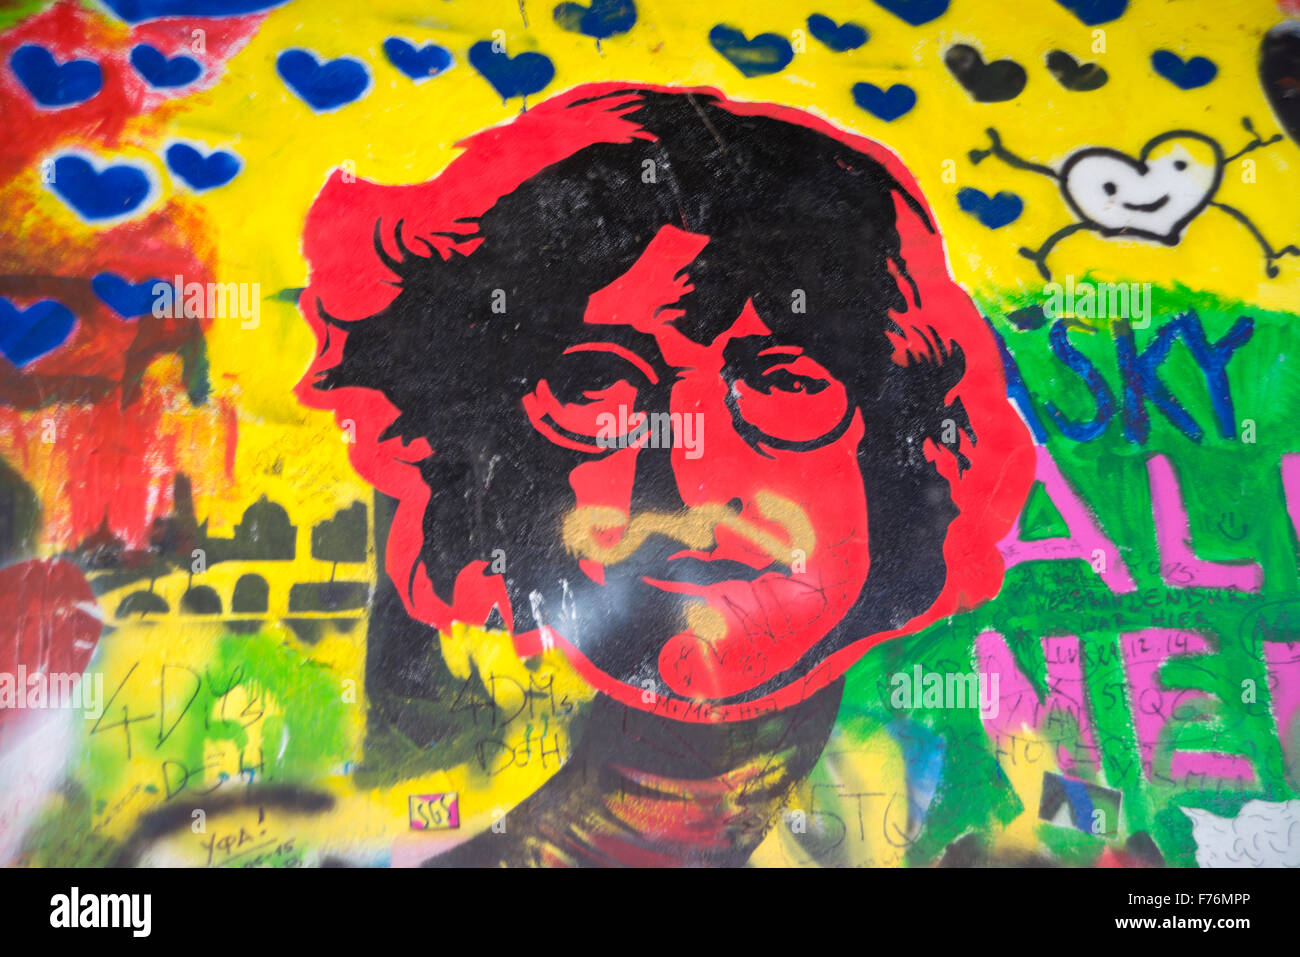 Praga, República Checa - 22 de julio: El muro de Lennon desde el decenio de 1980 está lleno de graffiti inspirado en John Lennon y piezas de lyr Foto de stock